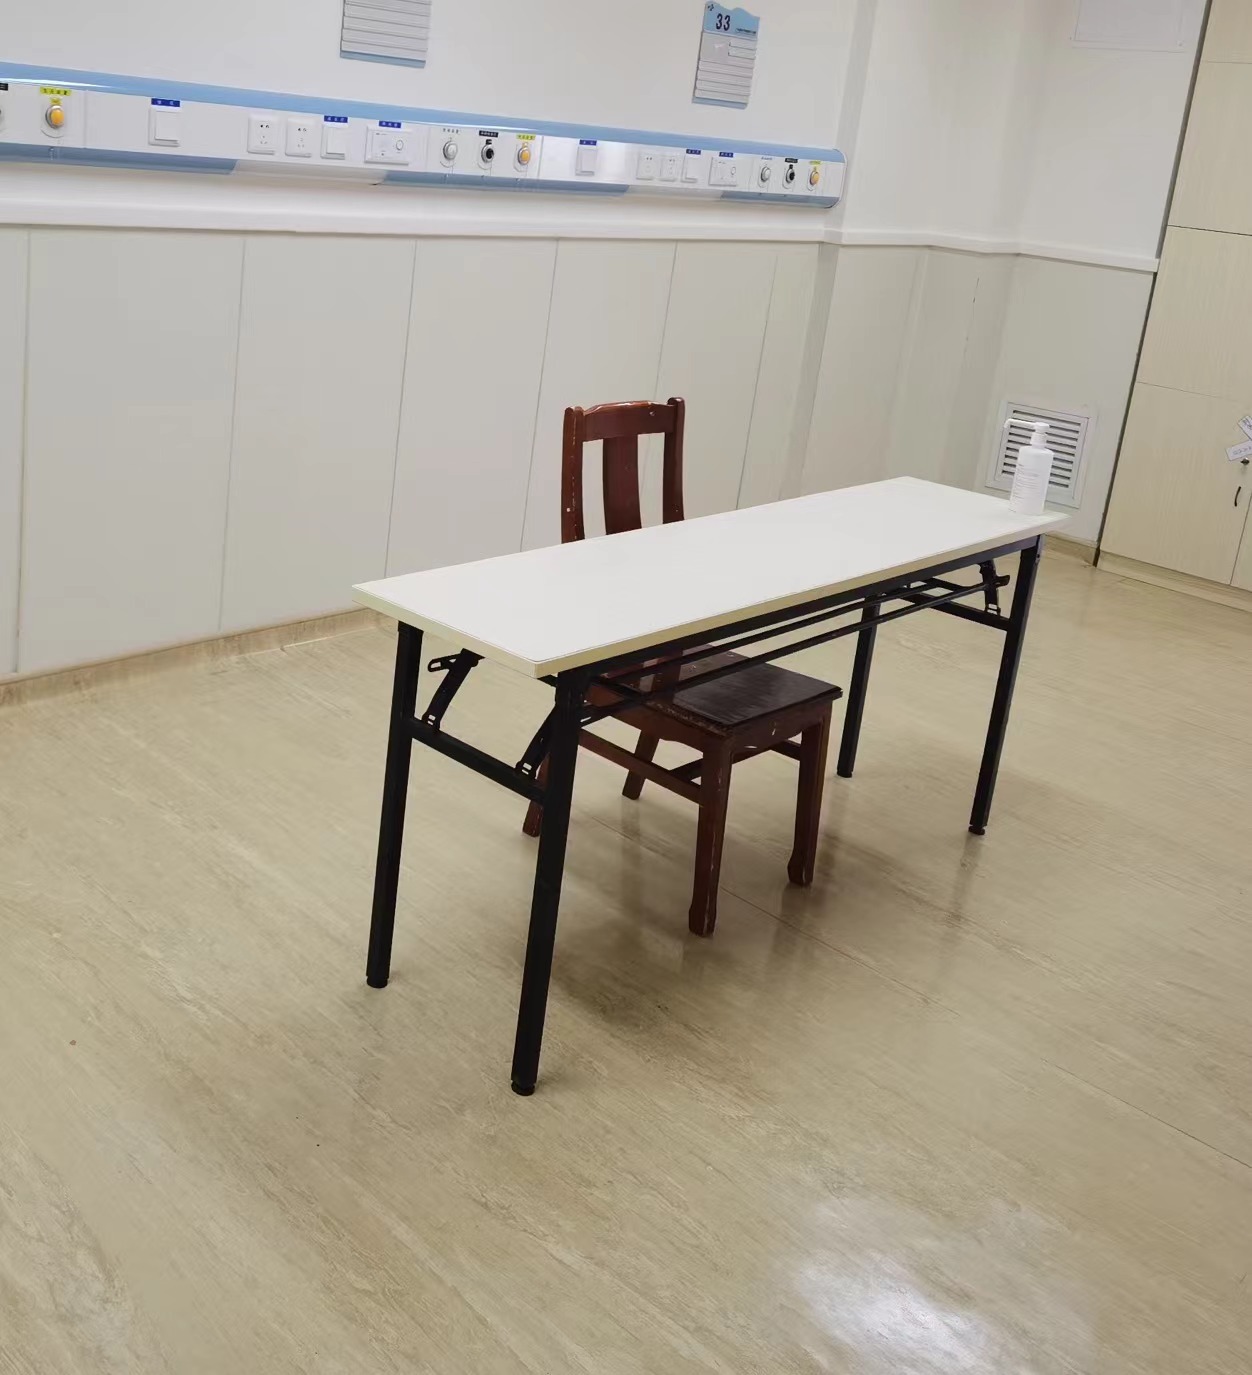 有备无患 广州市八院隔离病区打造“特殊考场”